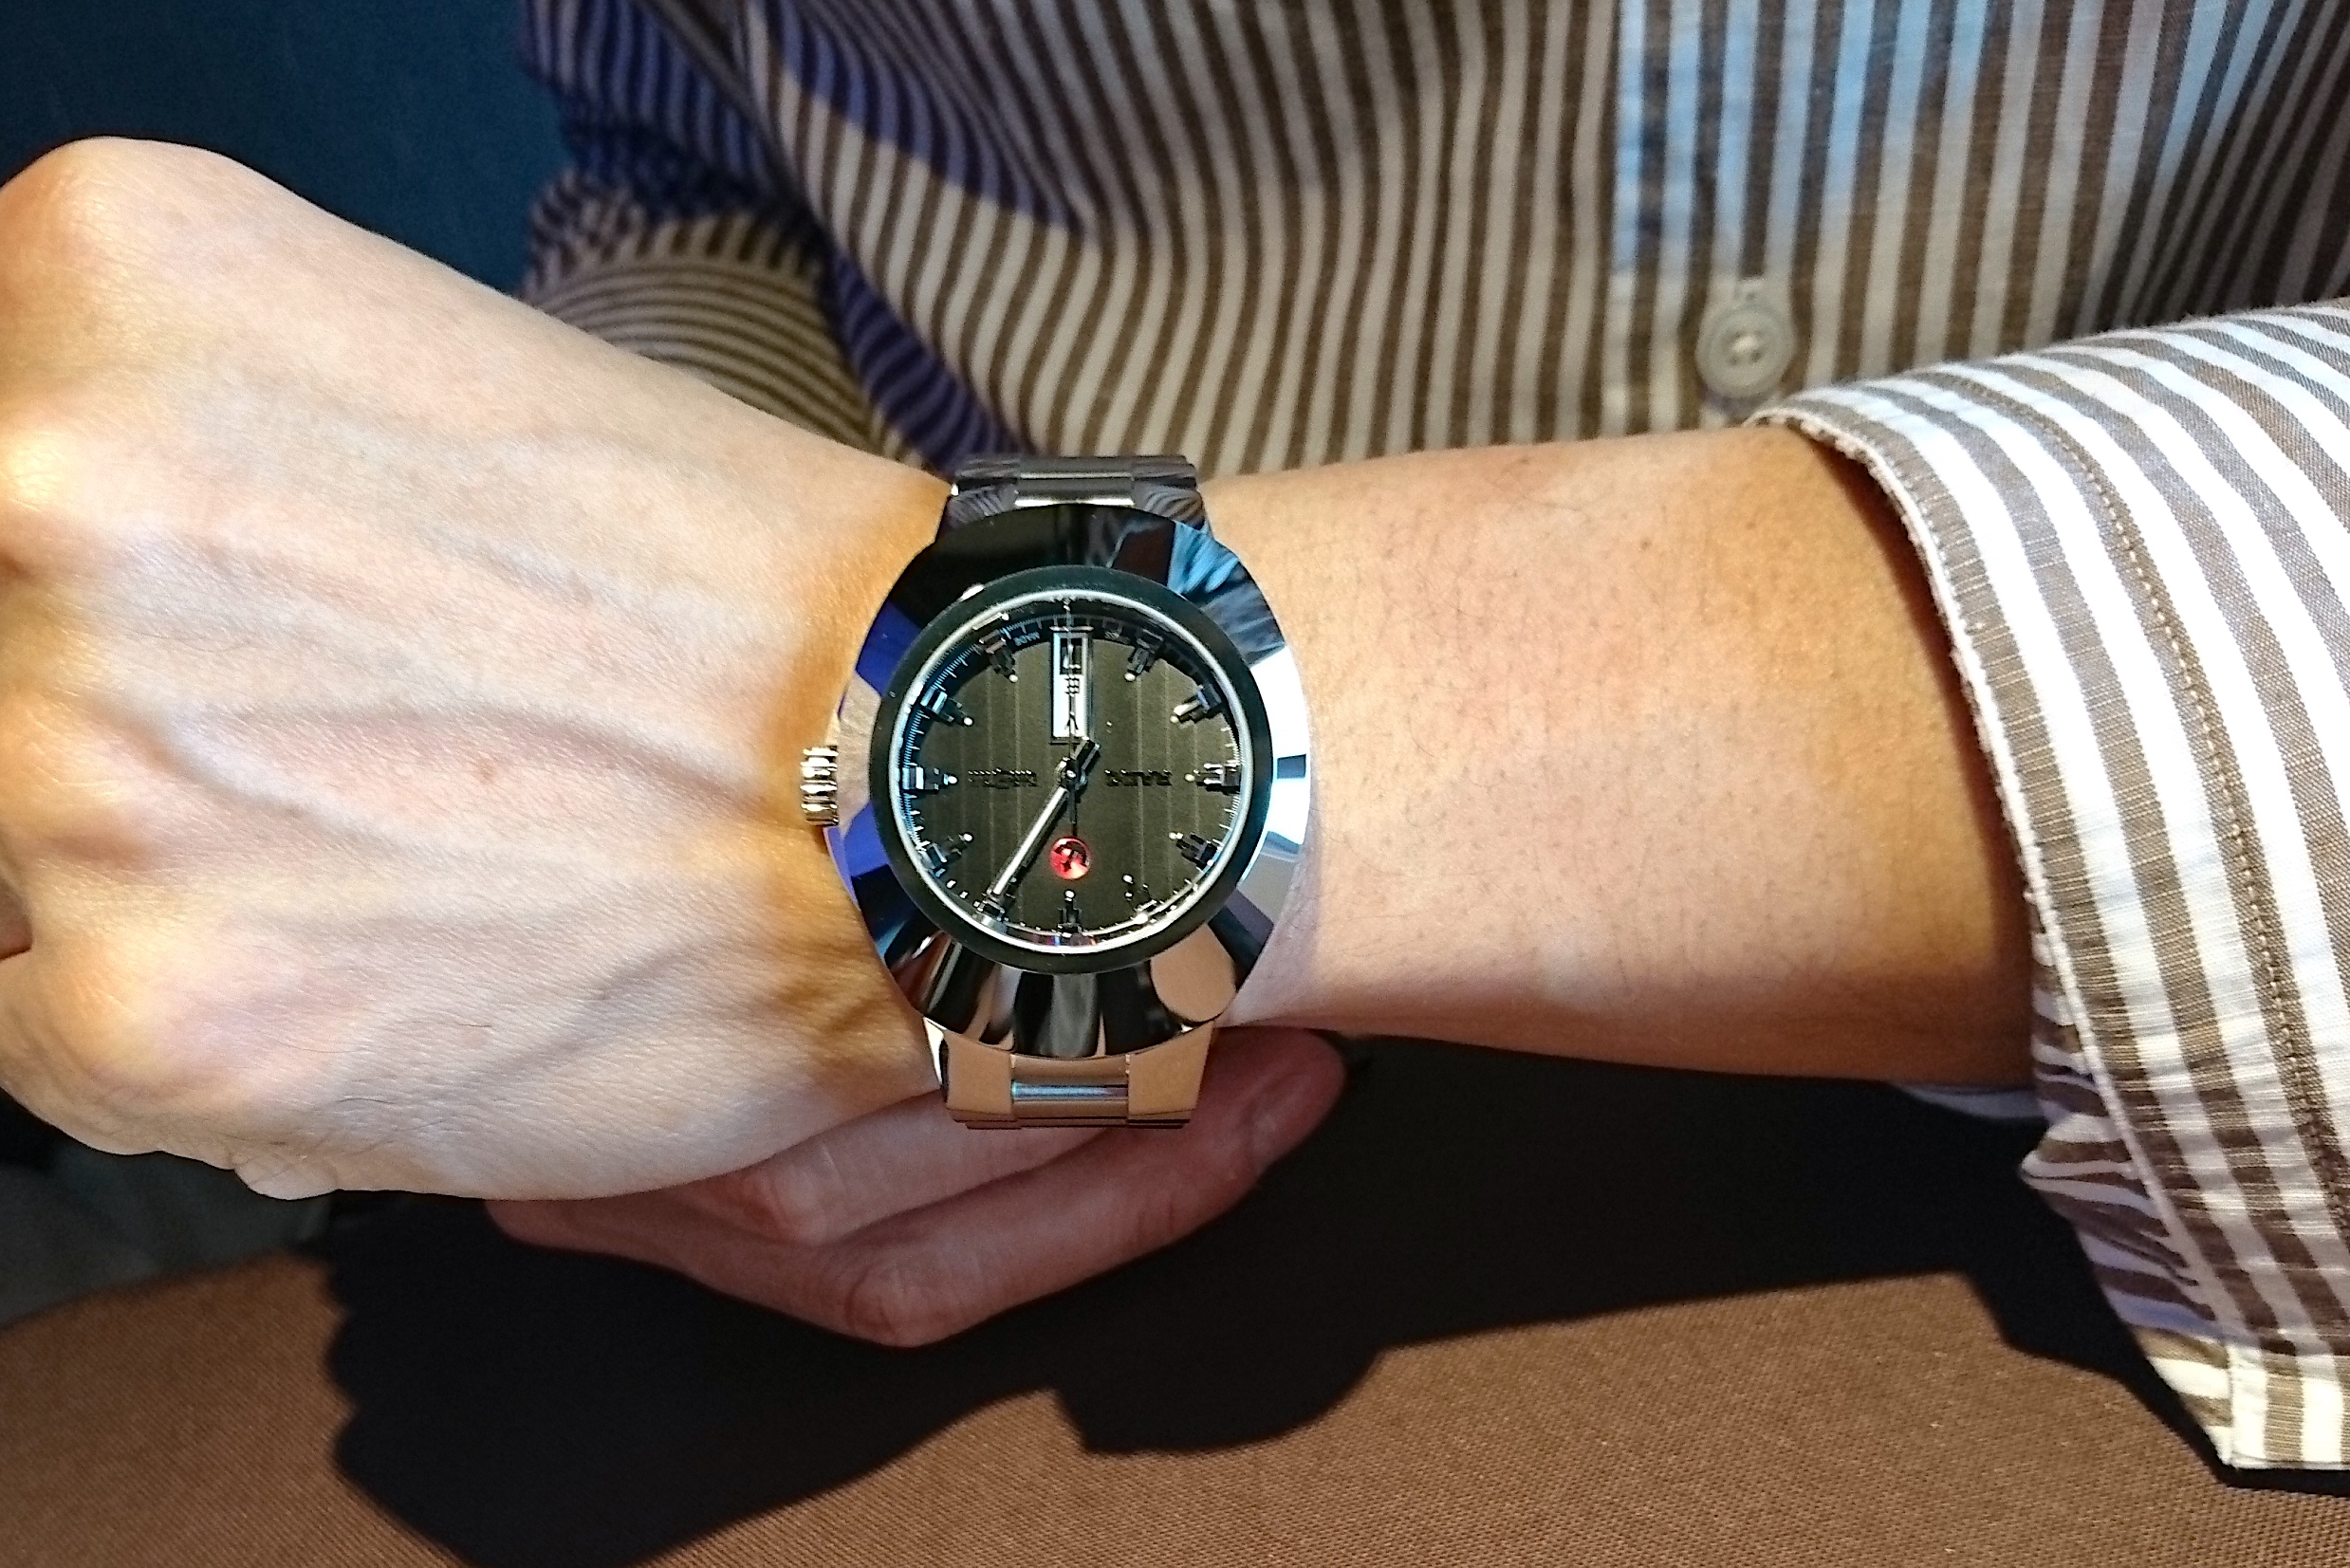 ラドー(RADO) ニューオリジナル ダイヤスター New Original DIASTAR | ブランド腕時計の正規販売店紹介サイトGressive